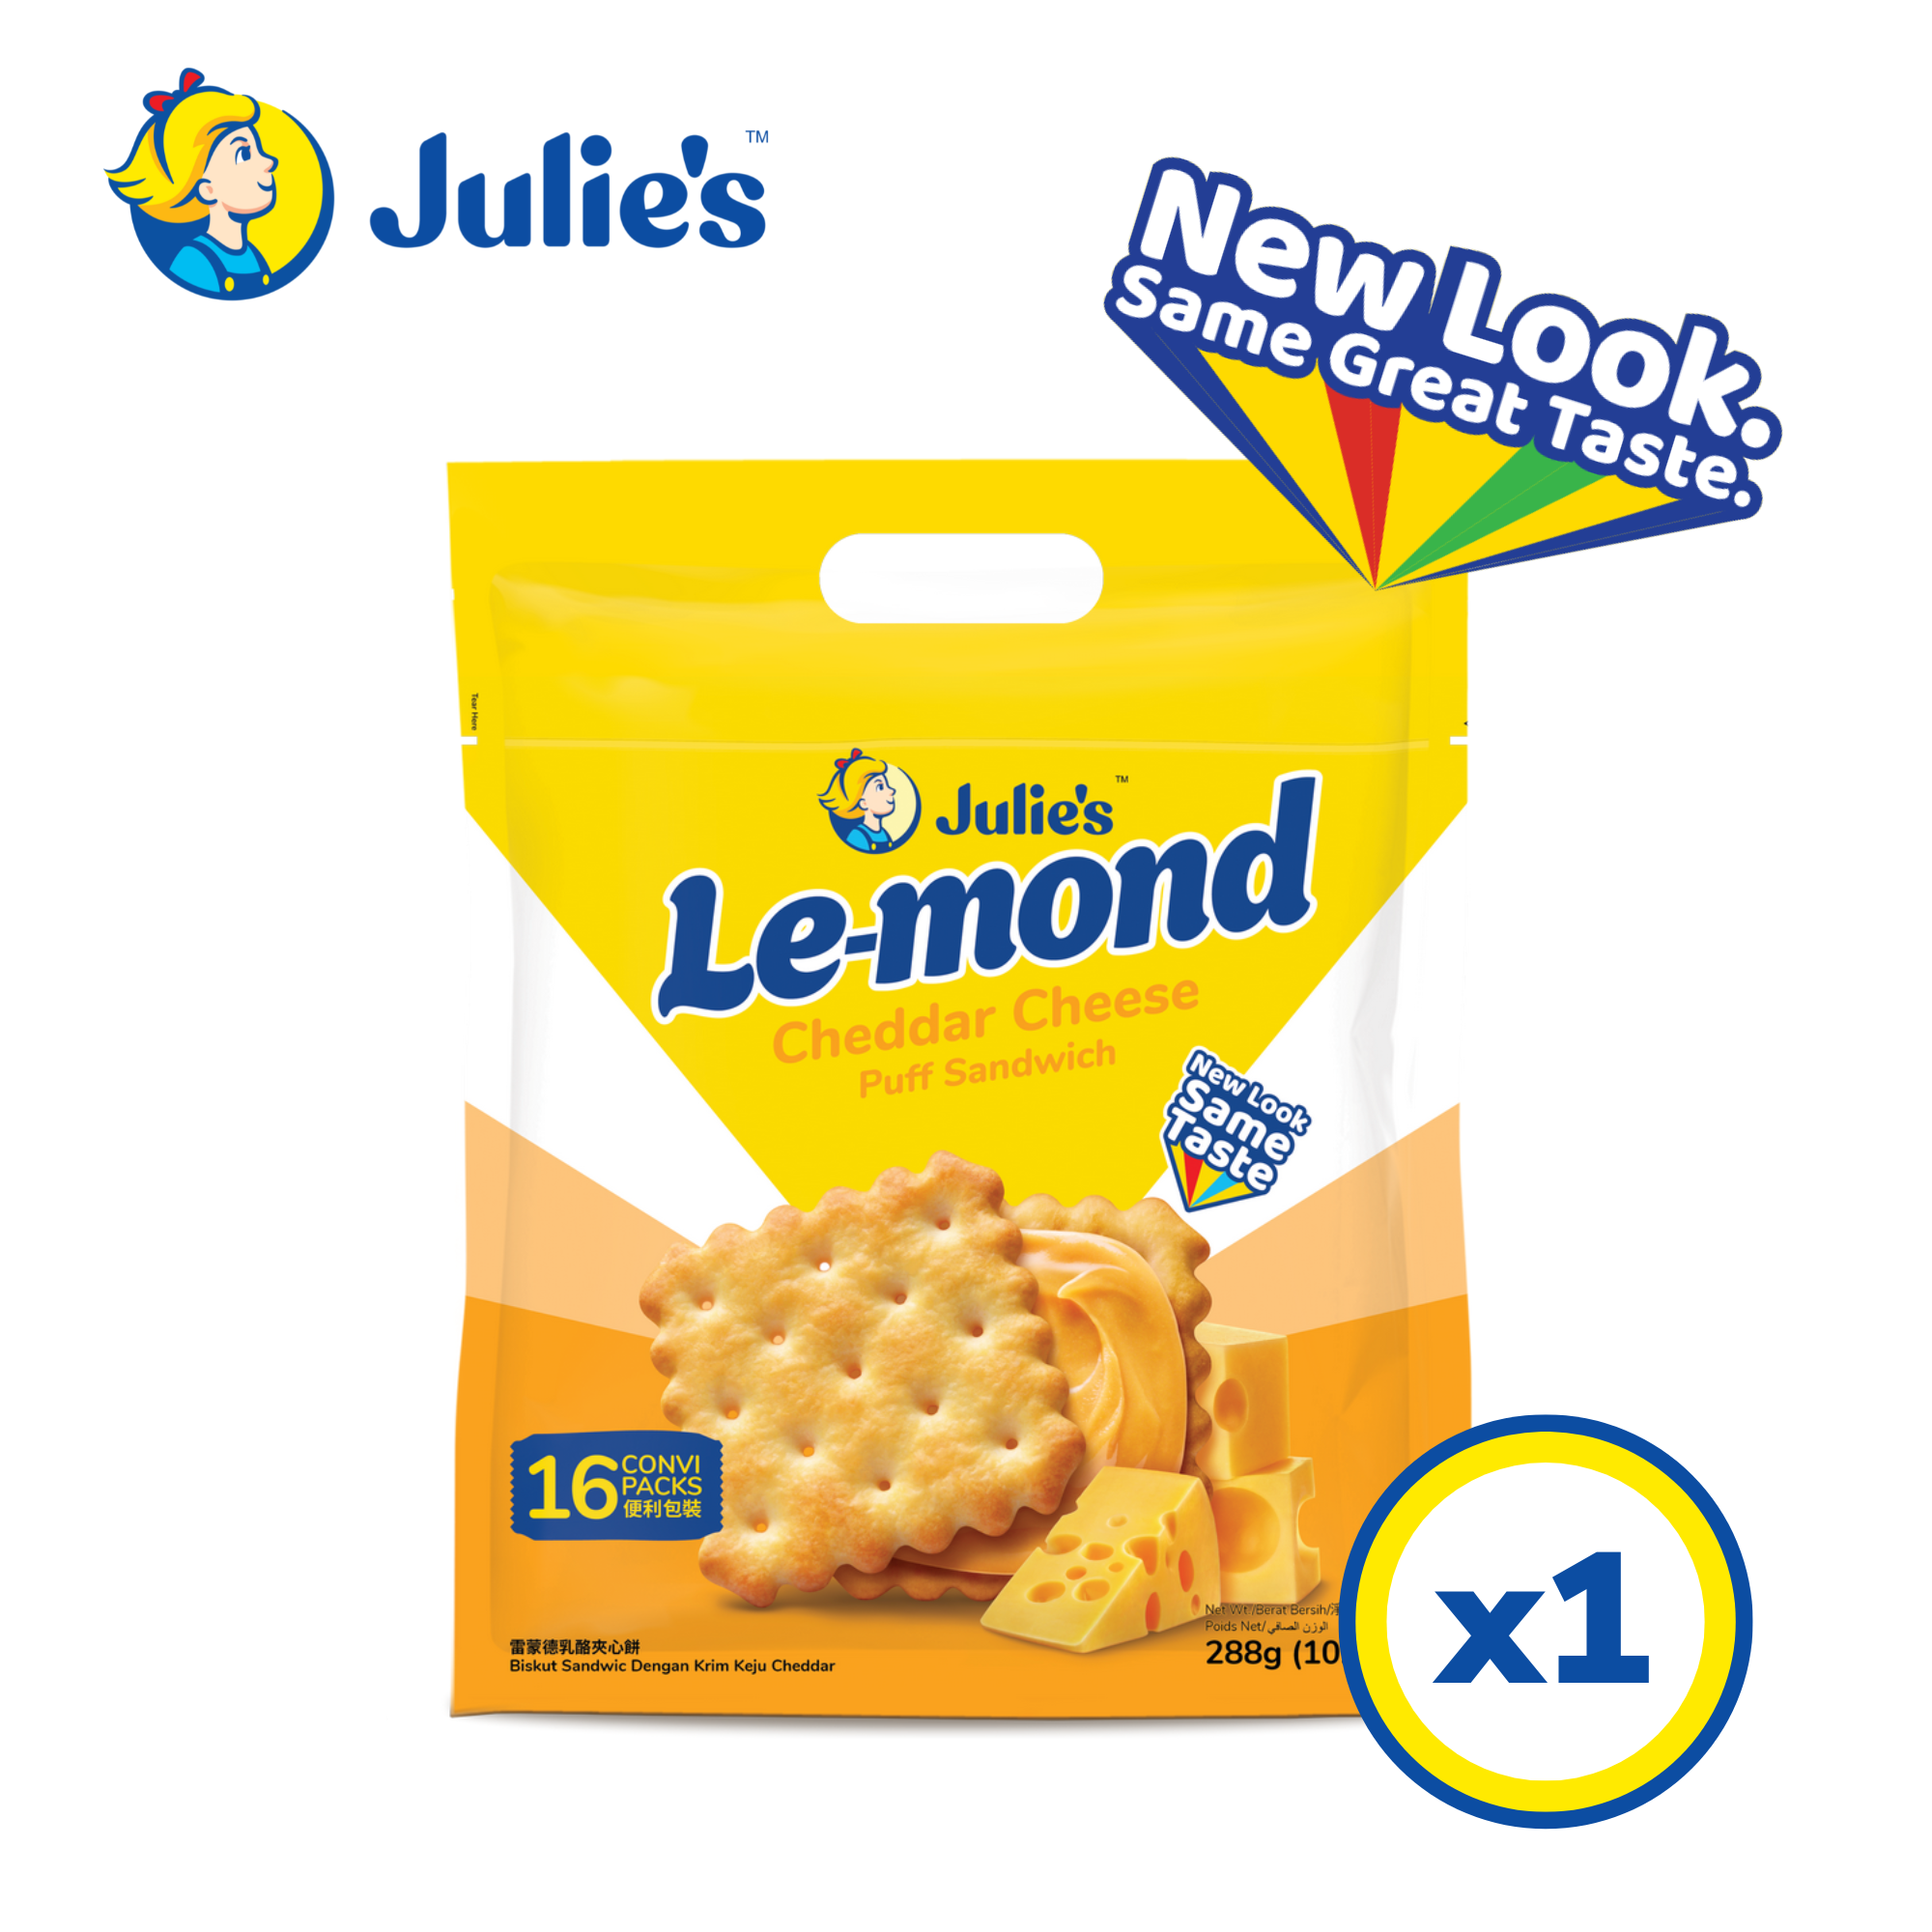 Julie's Le-mond Combo Pack